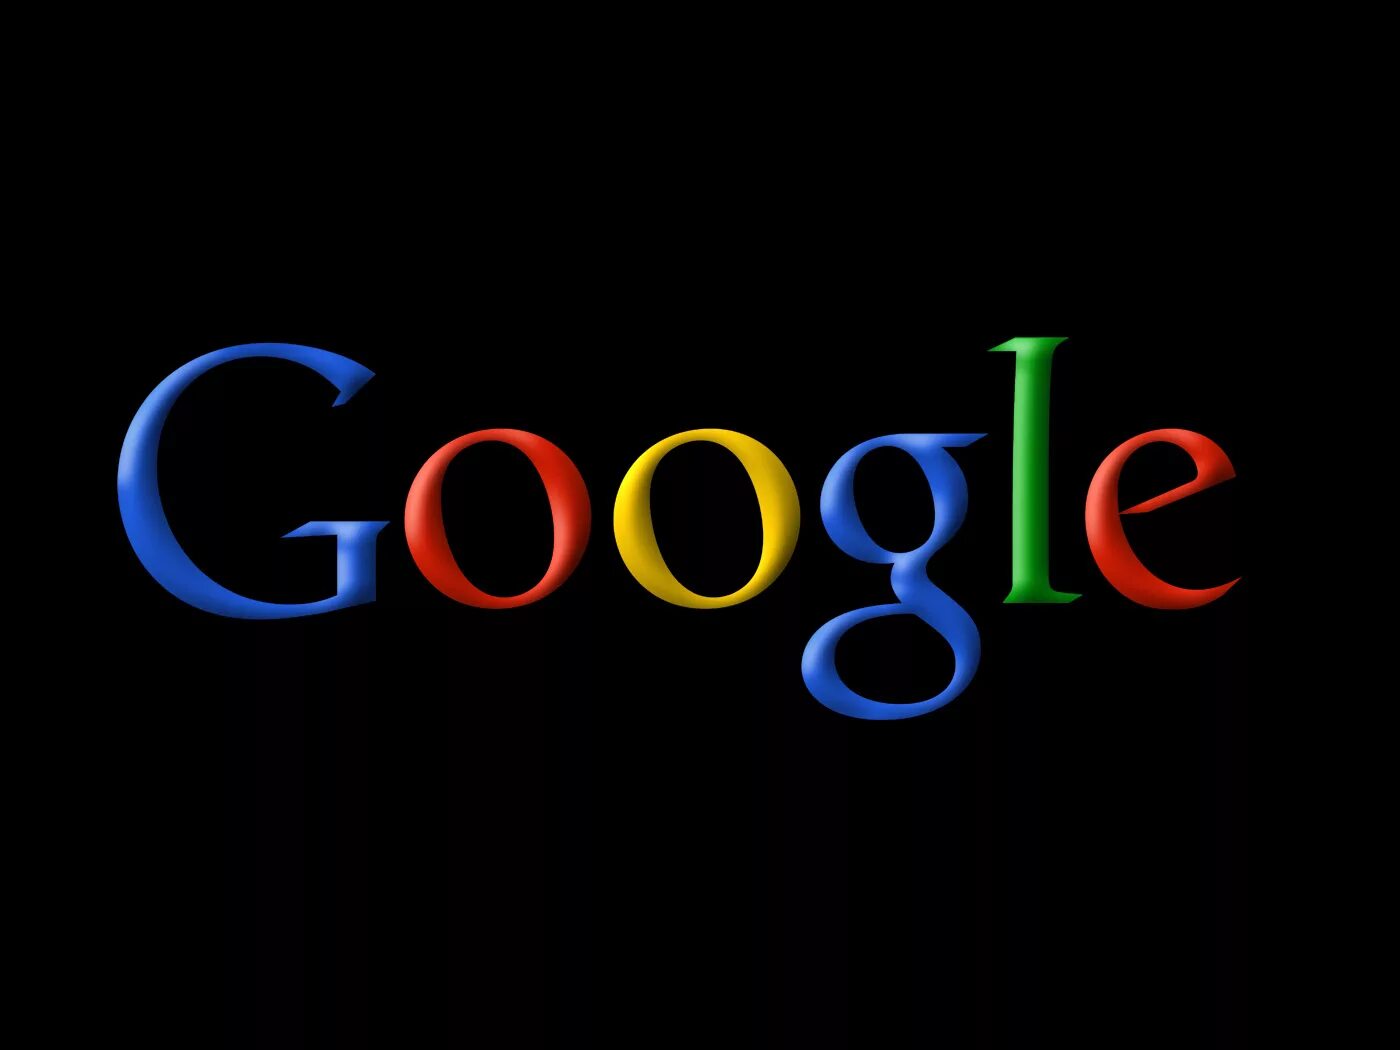 Goo gl com. Гугл. Гугл лого. Гугл картинки.